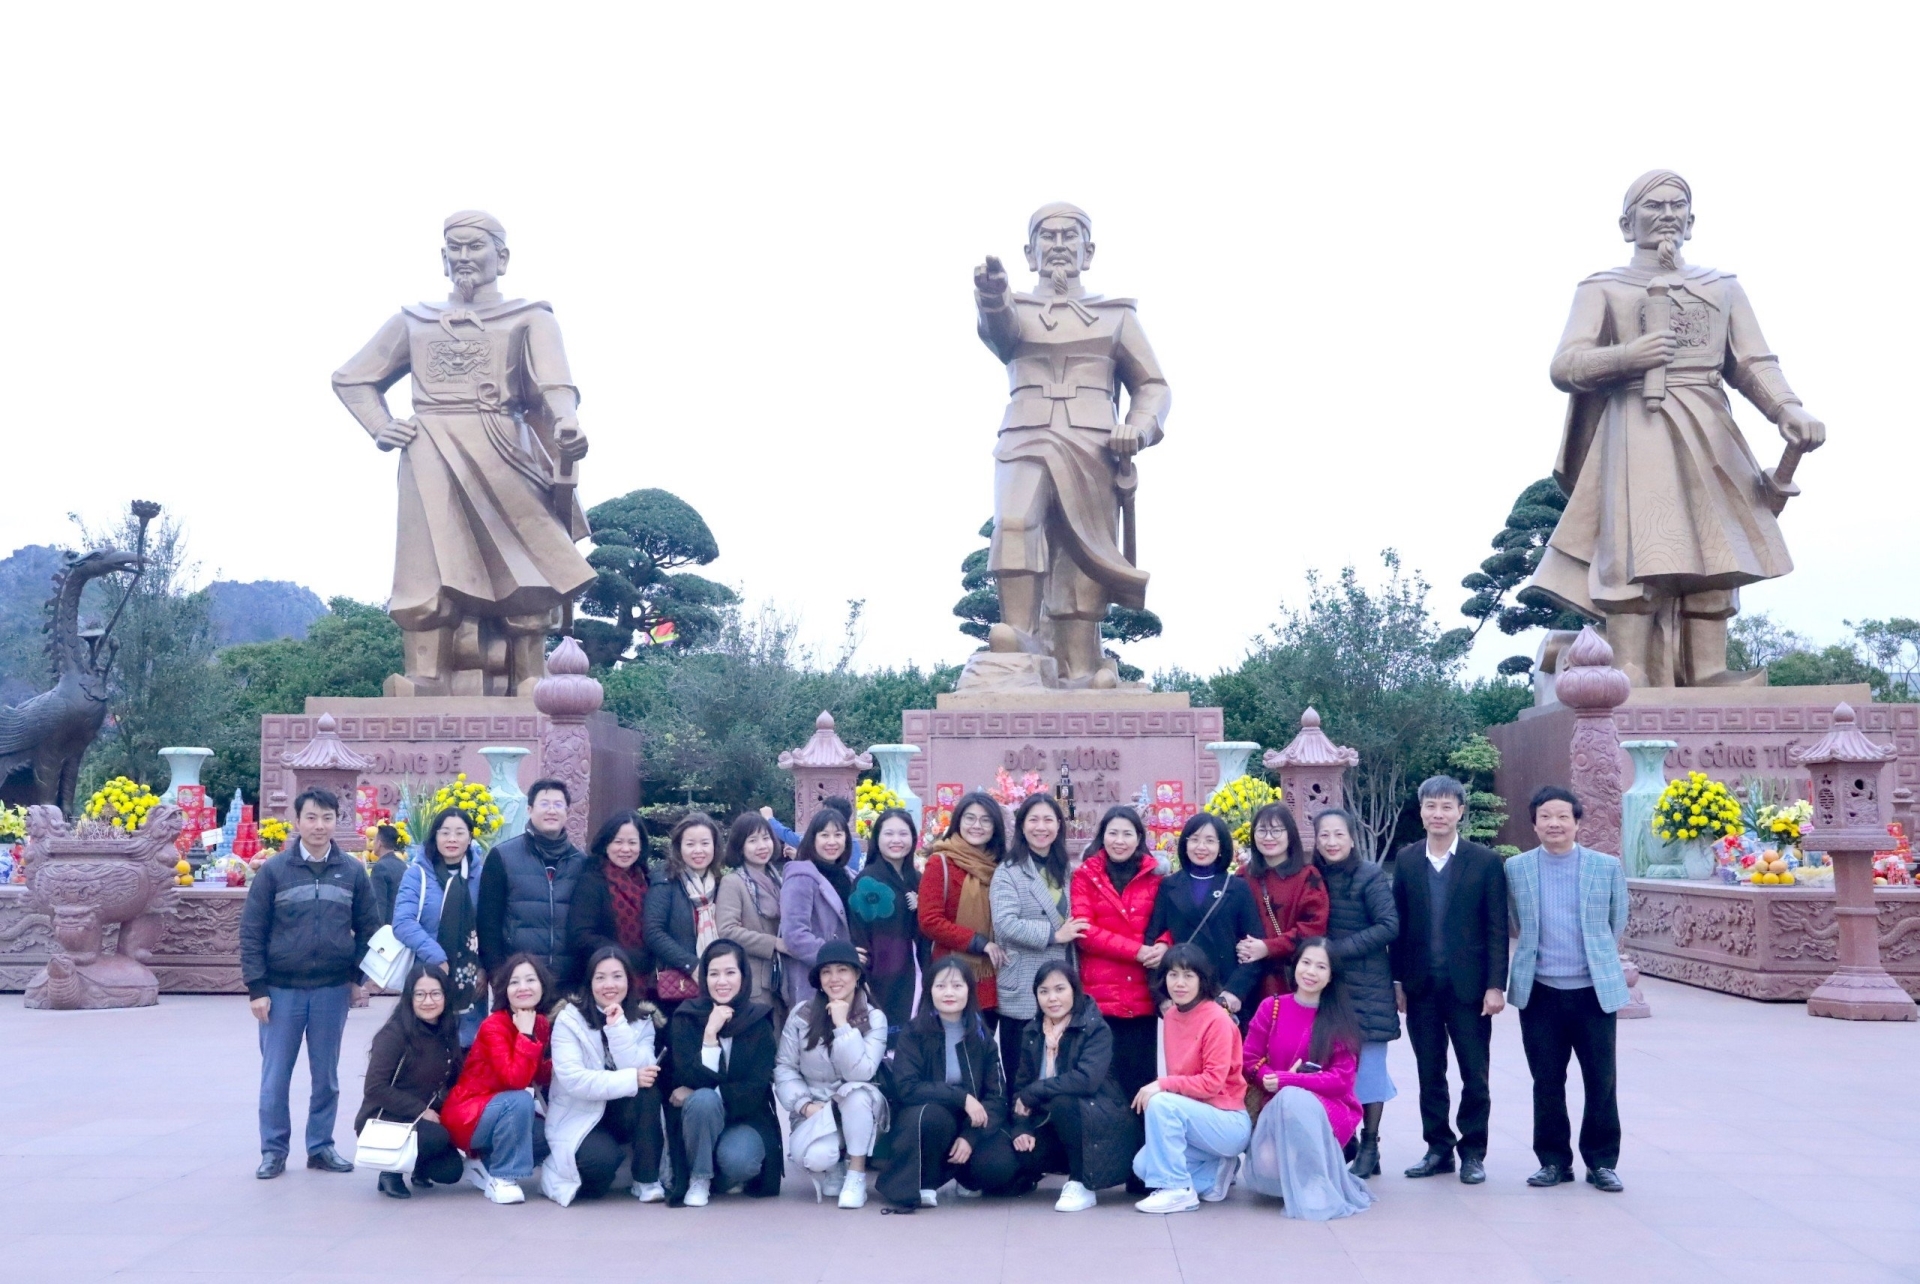 Đoàn chụp ảnh lưu niệm tại Quảng trường Chiến Thắng trên sông Bạch Đằng, thuộc Khu di tích Bạch Đằng Giang (huyện Thủy Nguyên, Thành phố Hải Phòng).